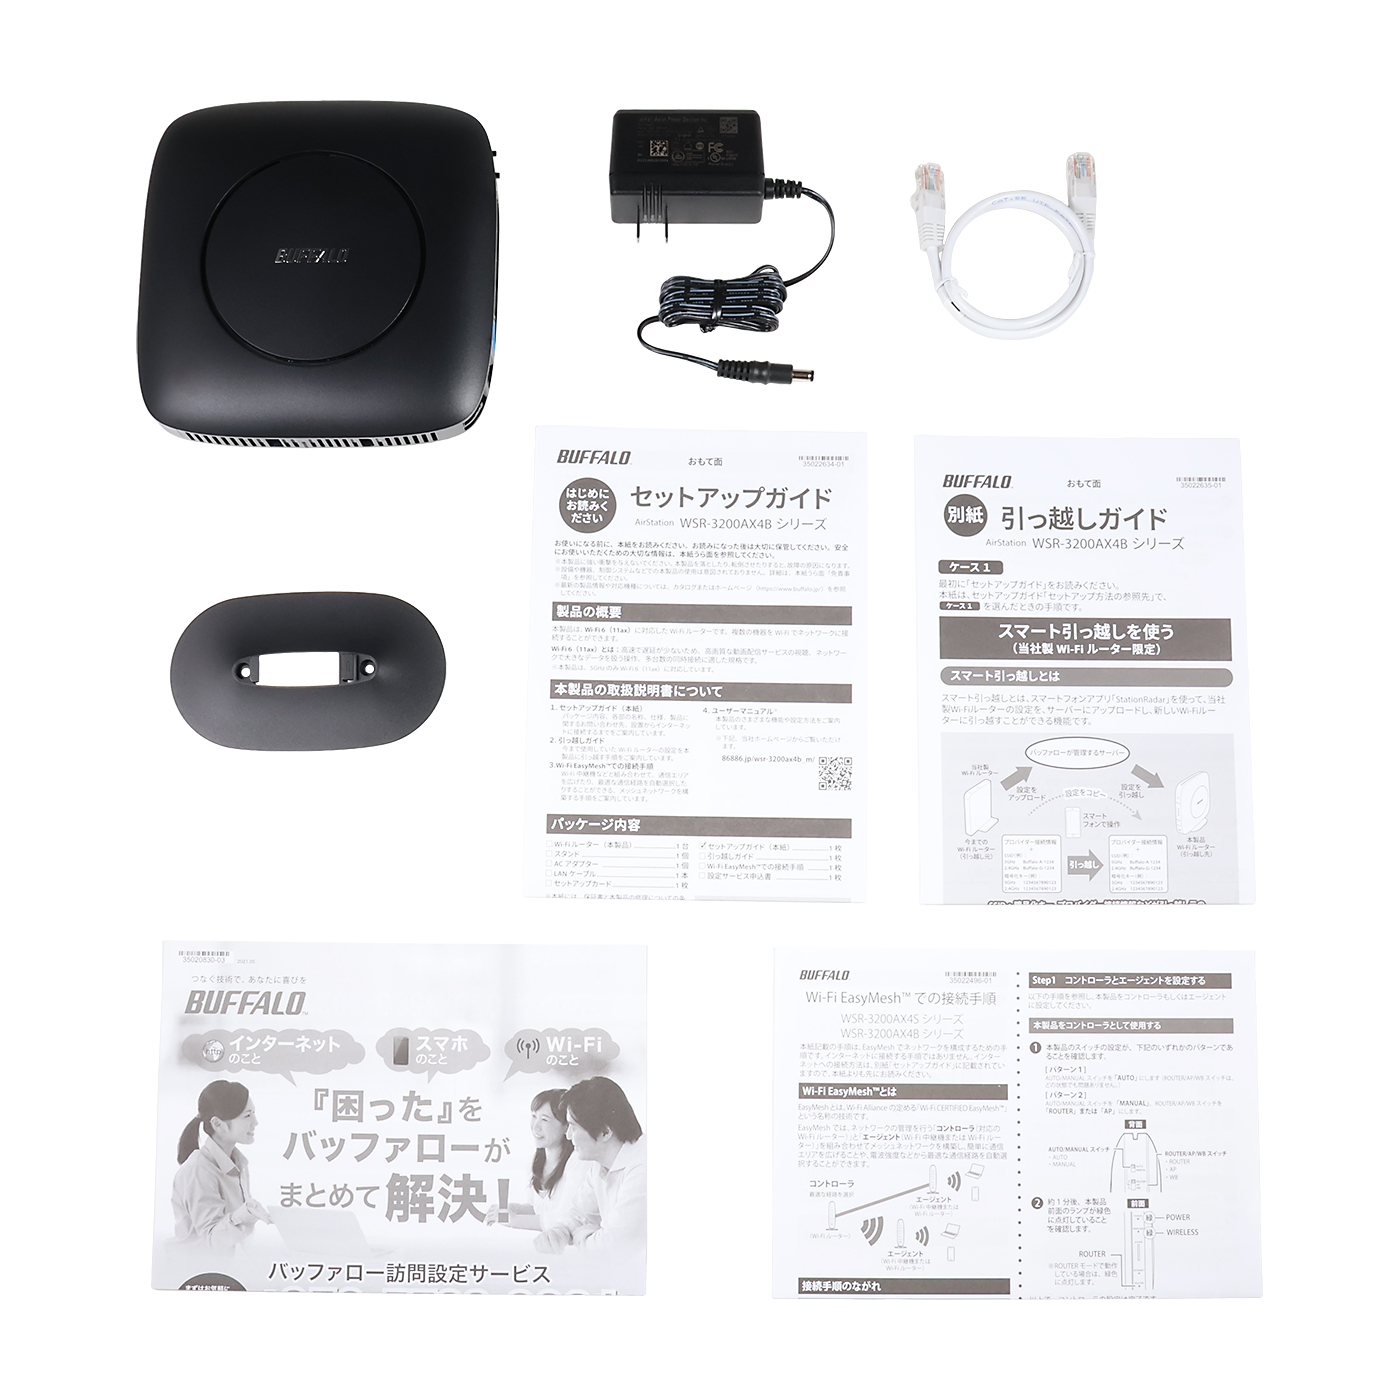 バッファロー(BUFFALO) WSR-3000AX4P-WH(ホワイト) AirStation Wi-Fi 6